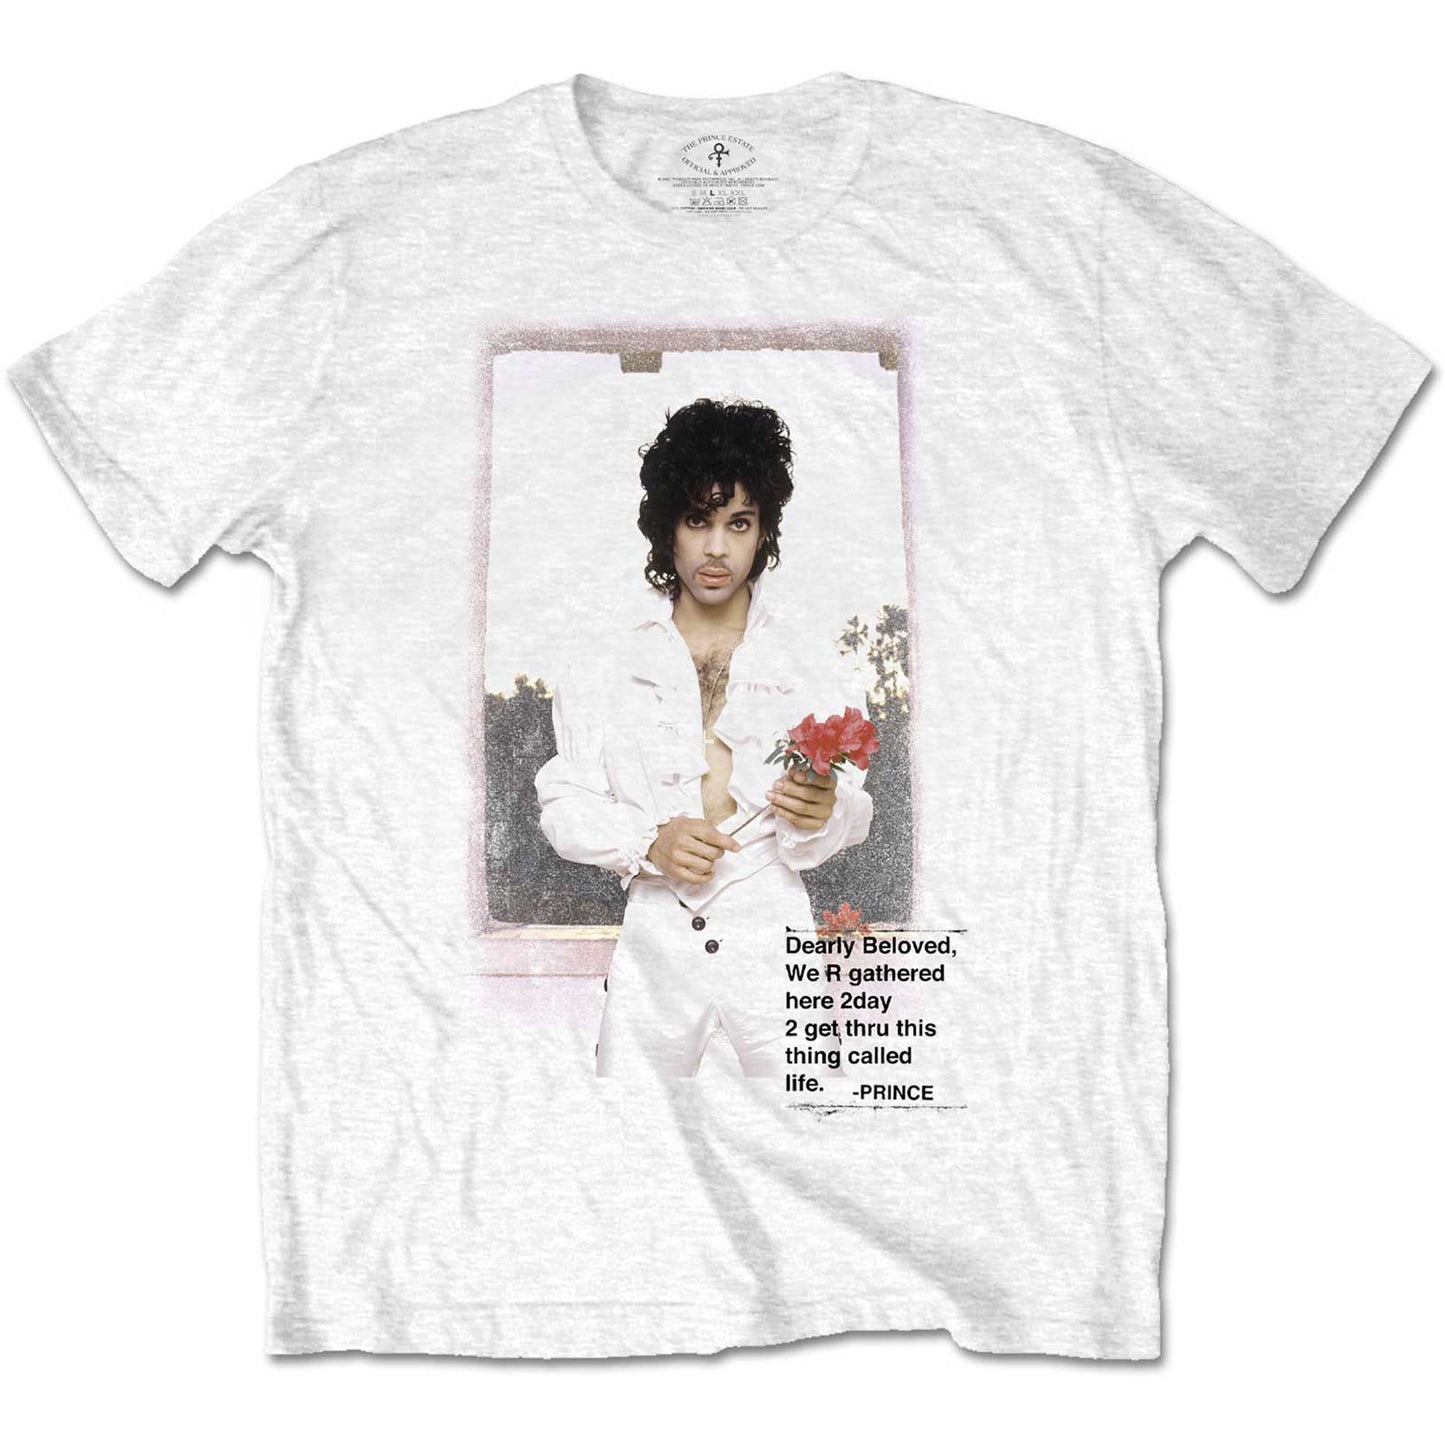 Prince Unisex T-Shirt: Beautiful Photo